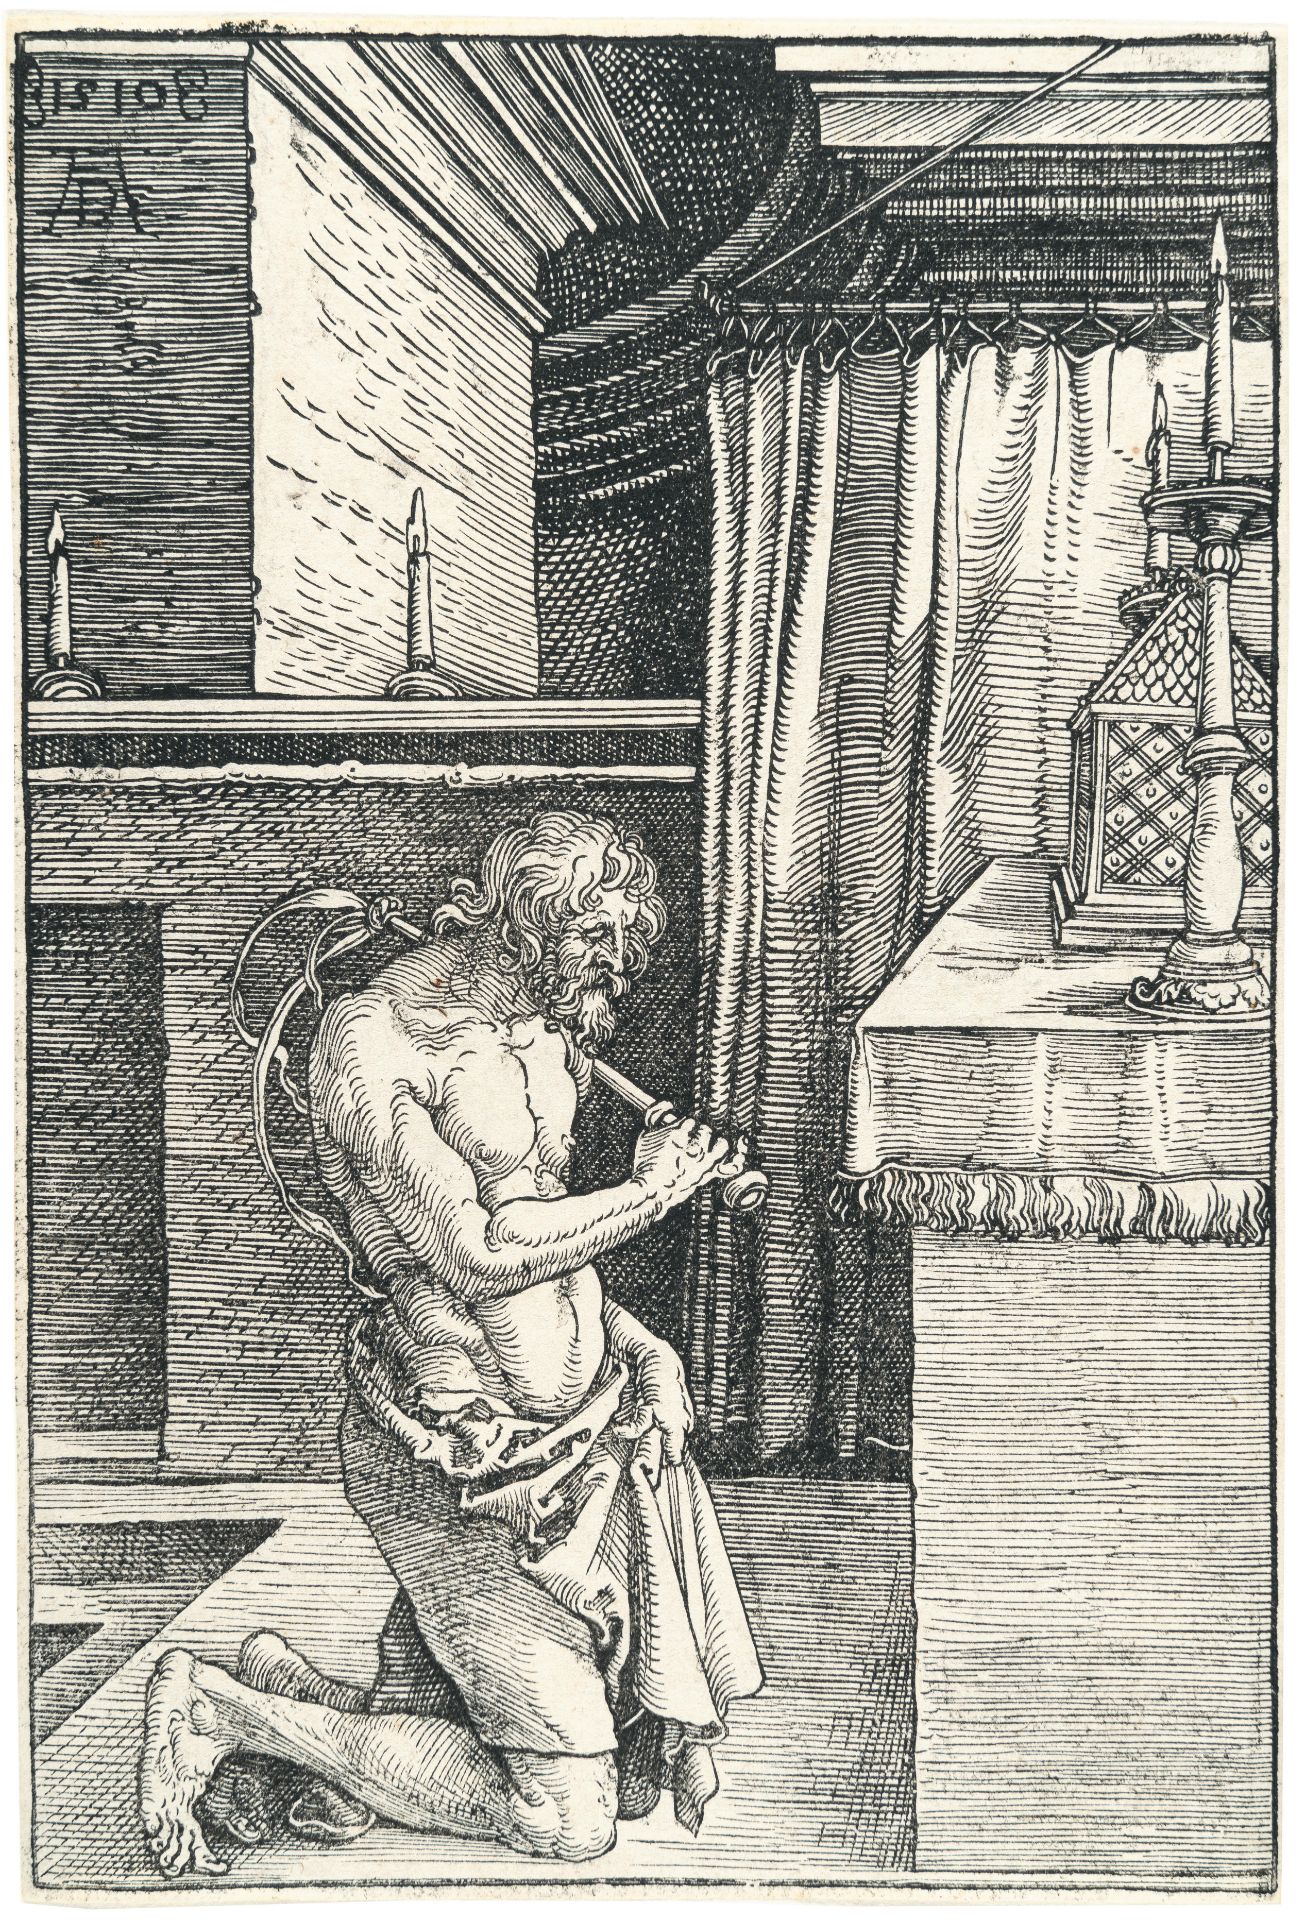 Albrecht Dürer (1471 - Nürnberg - 1528) – The Penitent (The penitent; King David, doing penance)